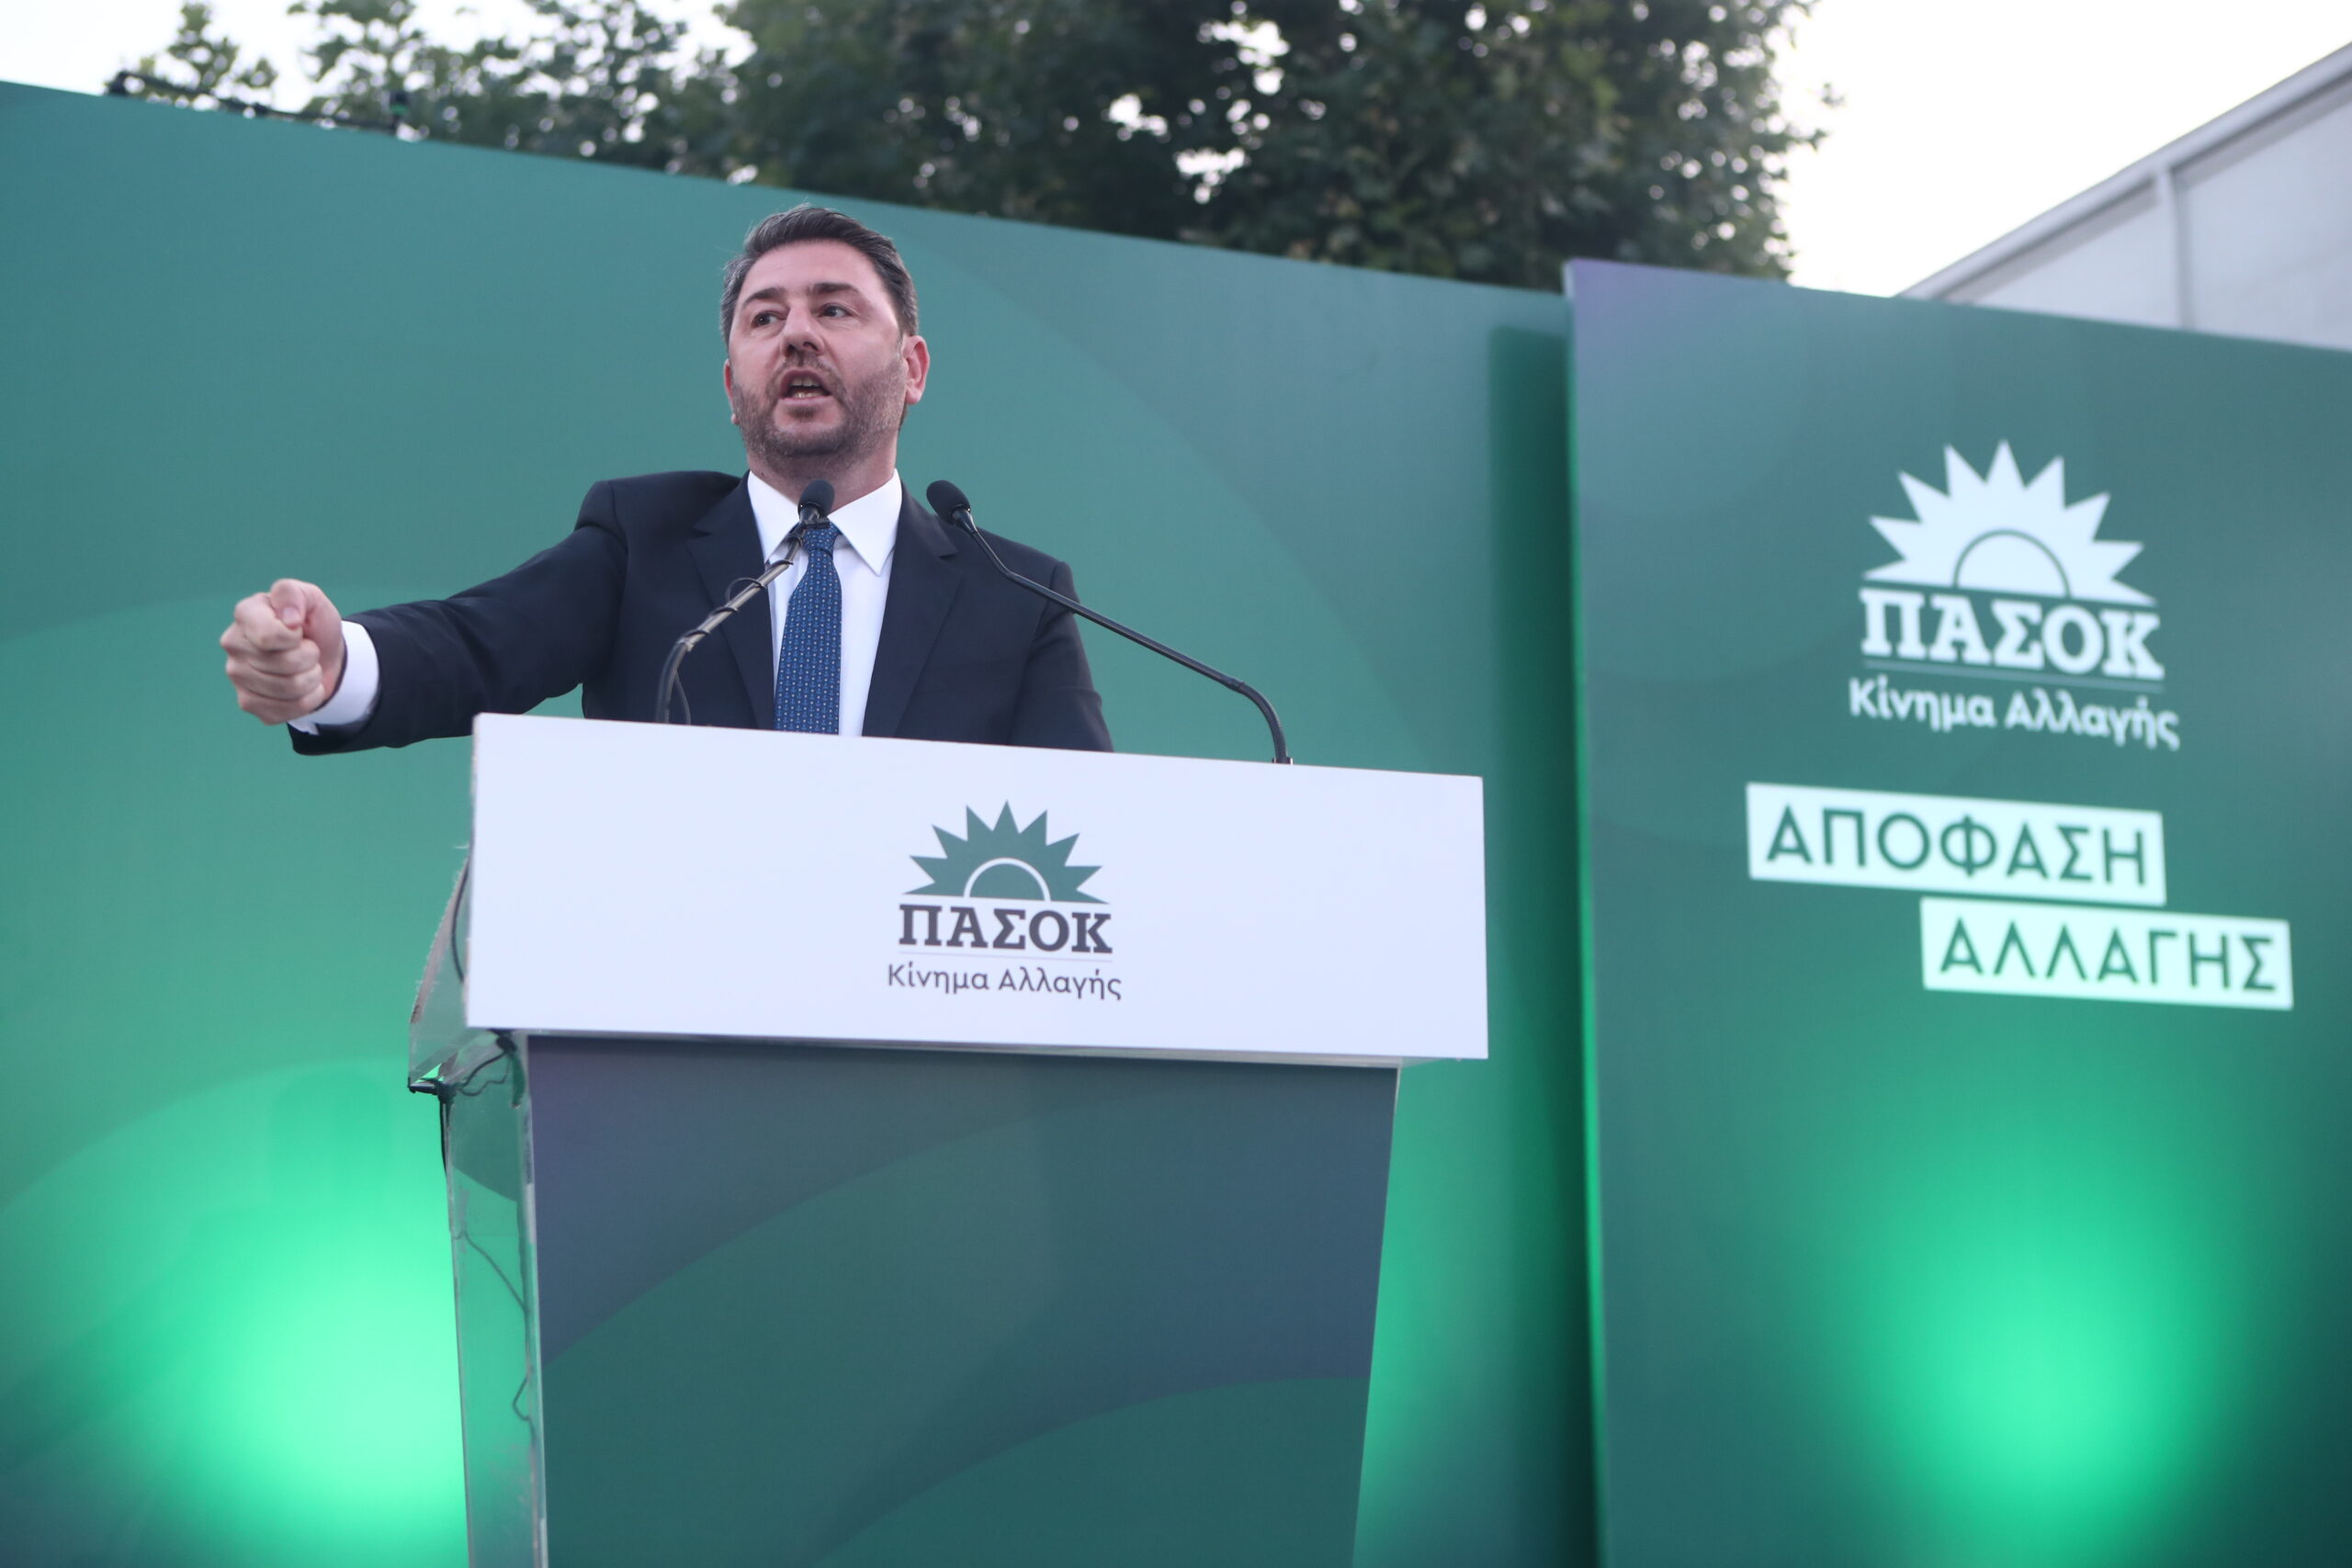 Νίκος Ανδρουλάκης από Θεσσαλονίκη: «Η 25η Ιουνίου ημέρα Αναγέννησης της Δημοκρατικής Παράταξης για μία ισχυρή αντιπολίτευση»